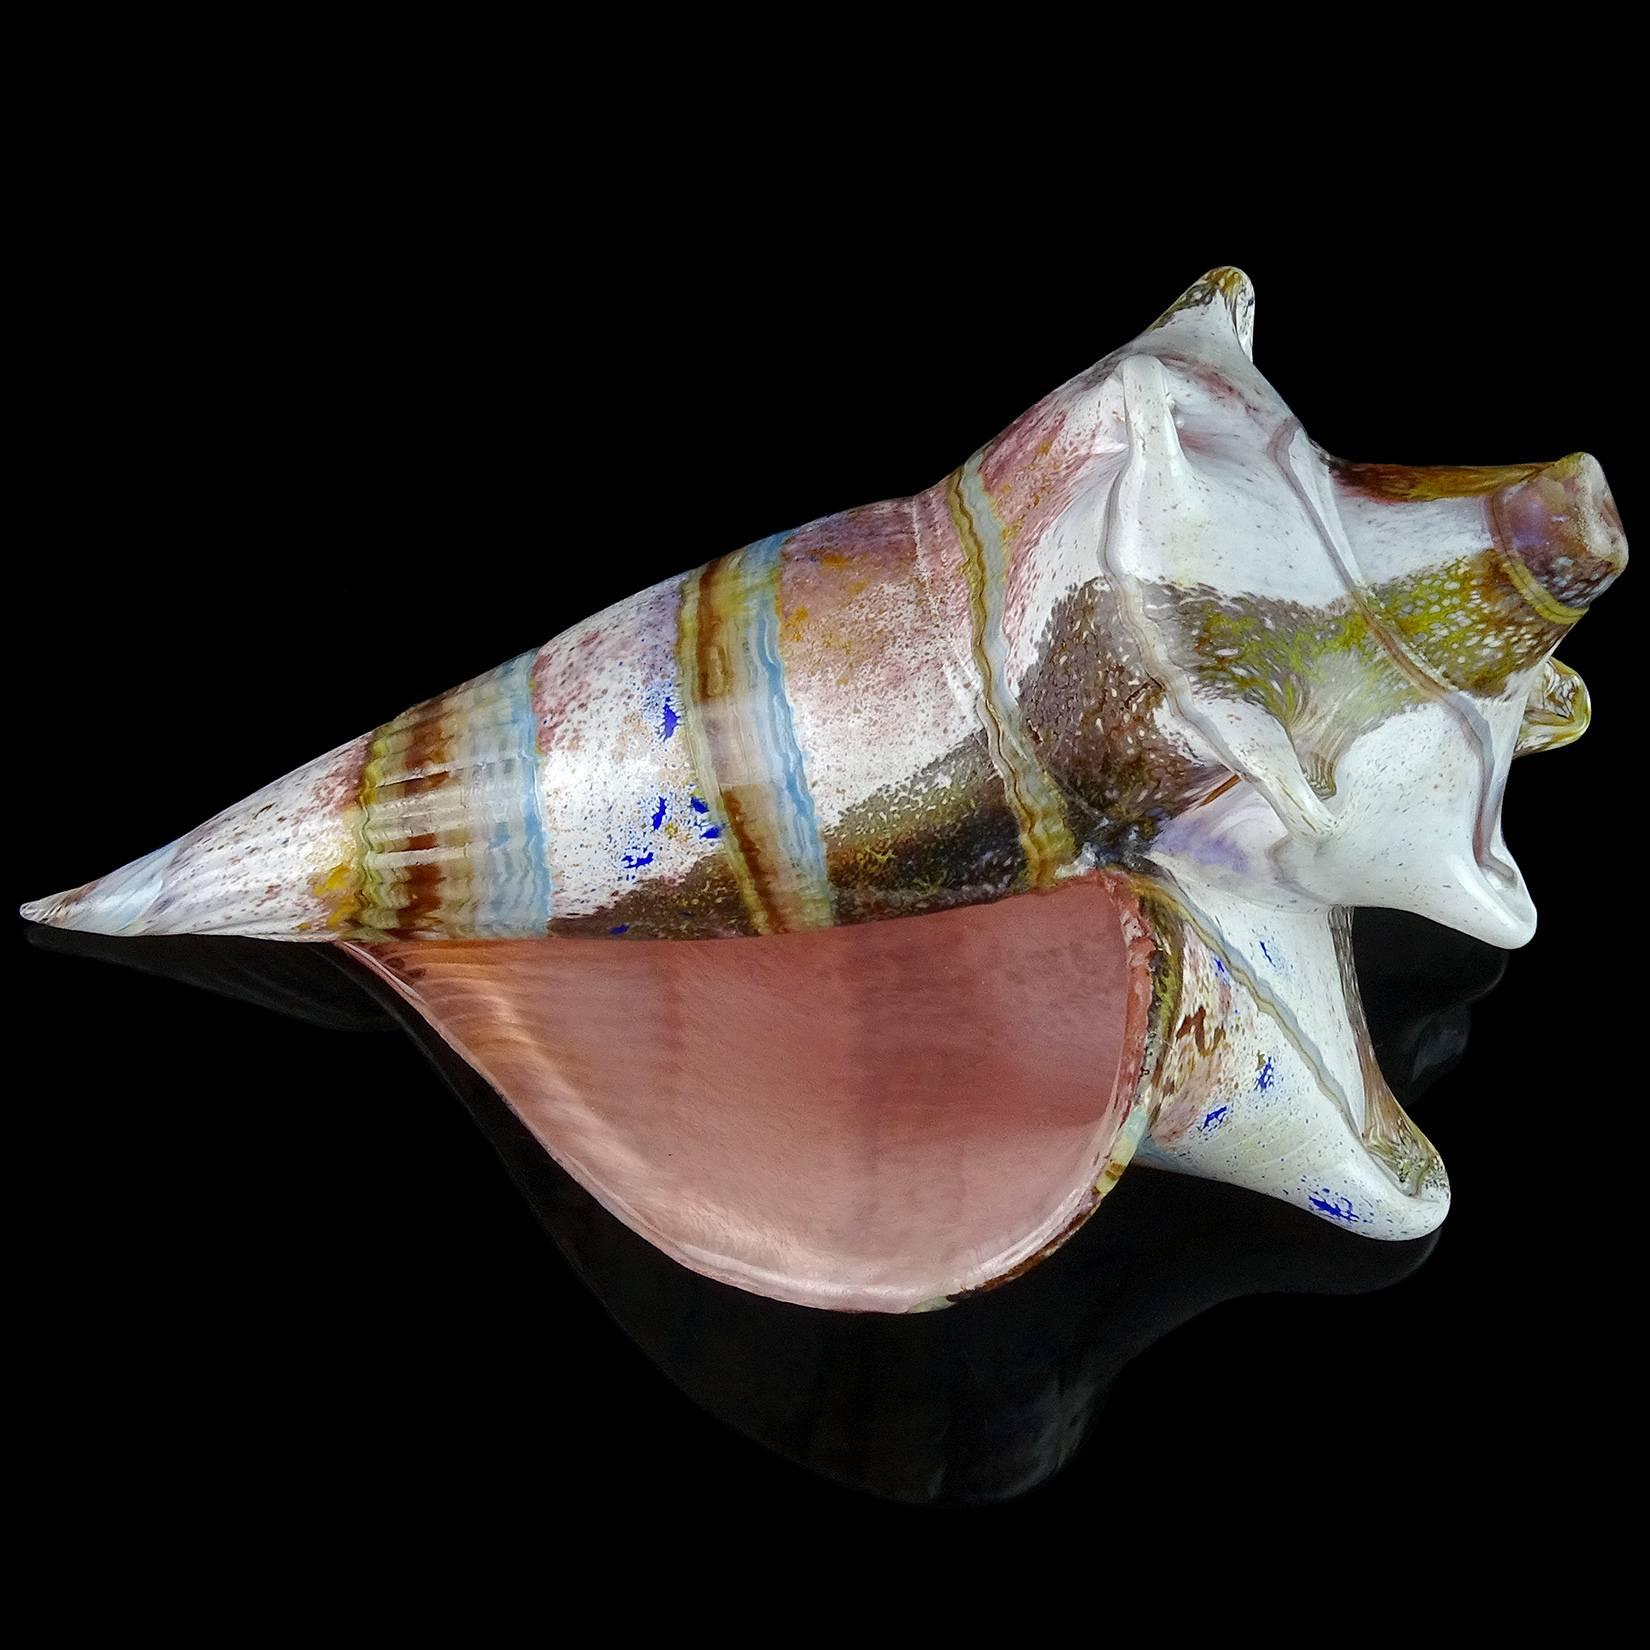 Italian Handblown Art Glass Multicolor Conch Seashell Sculpture Decor Object 1